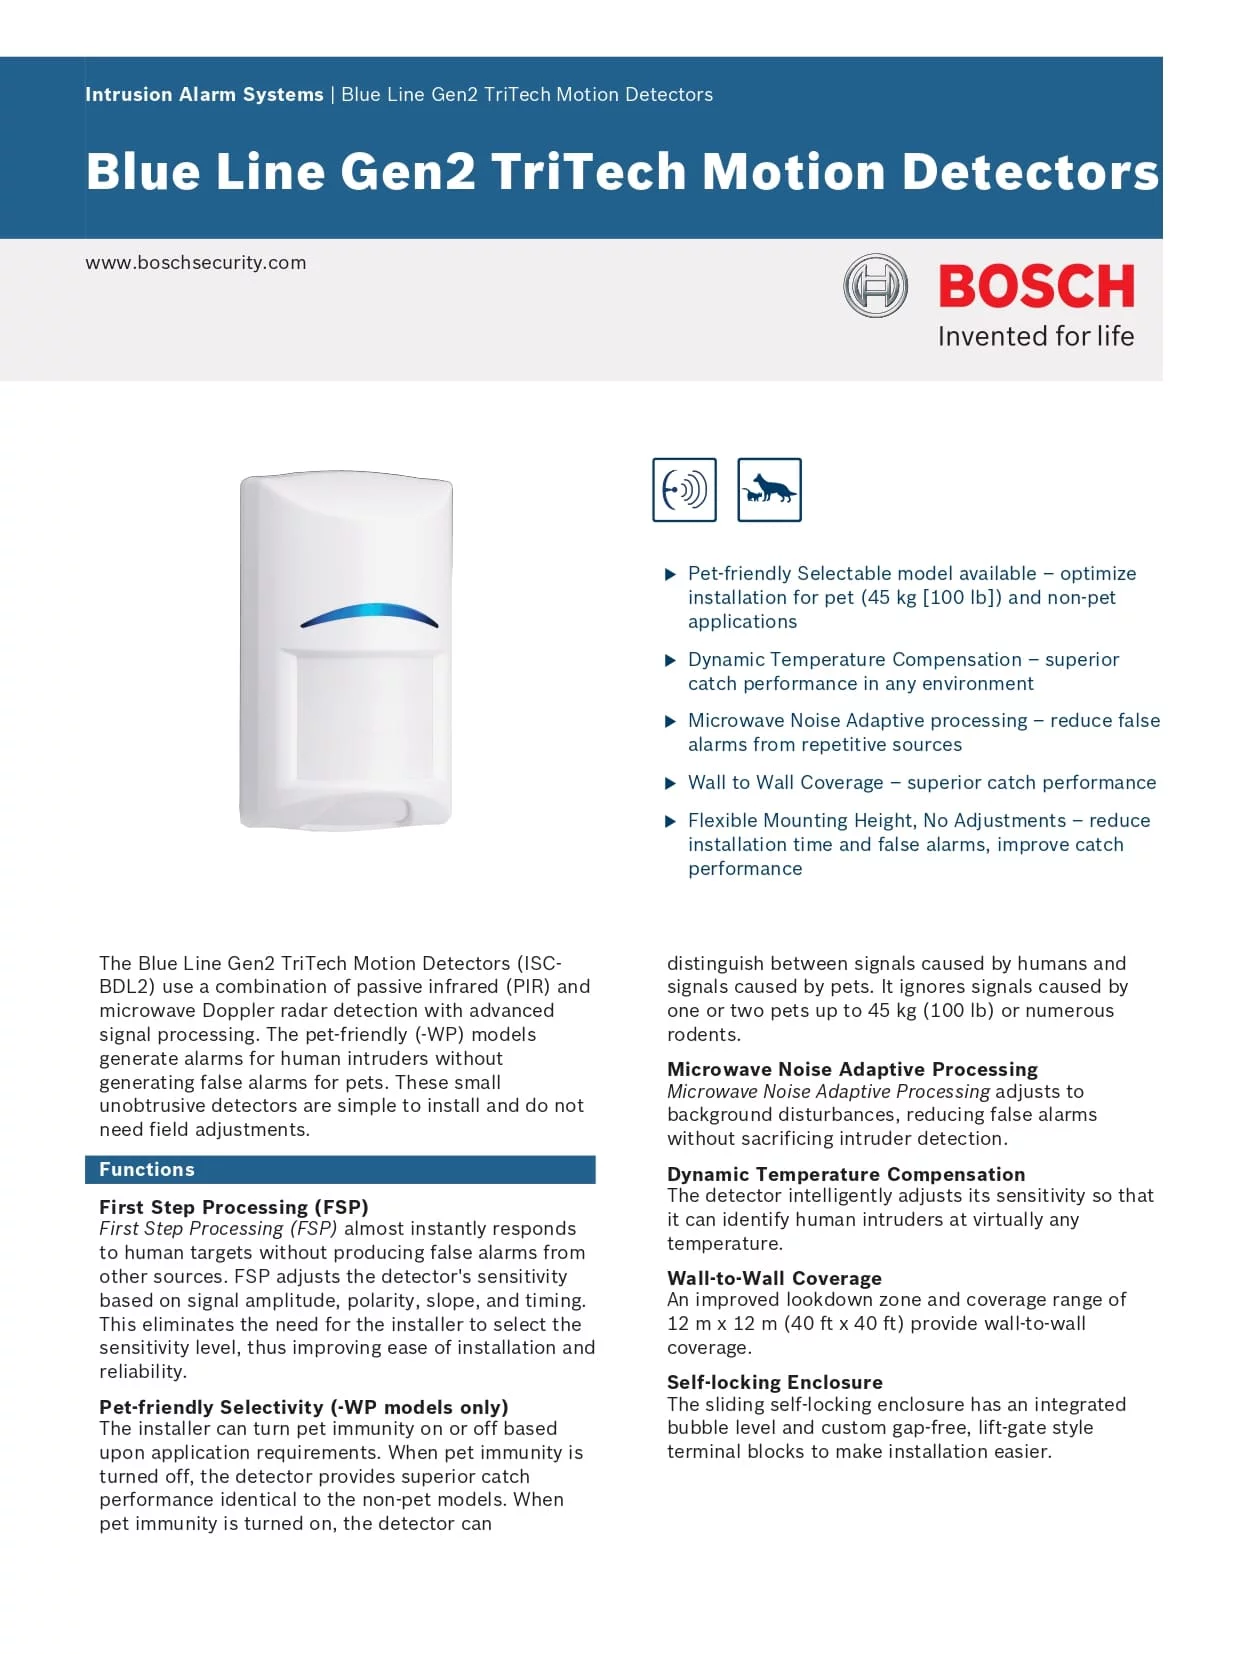 Bosch SC-BDL2-WP12G Blue Line Gen2 TriTech Pet Proof-Alarm Expert